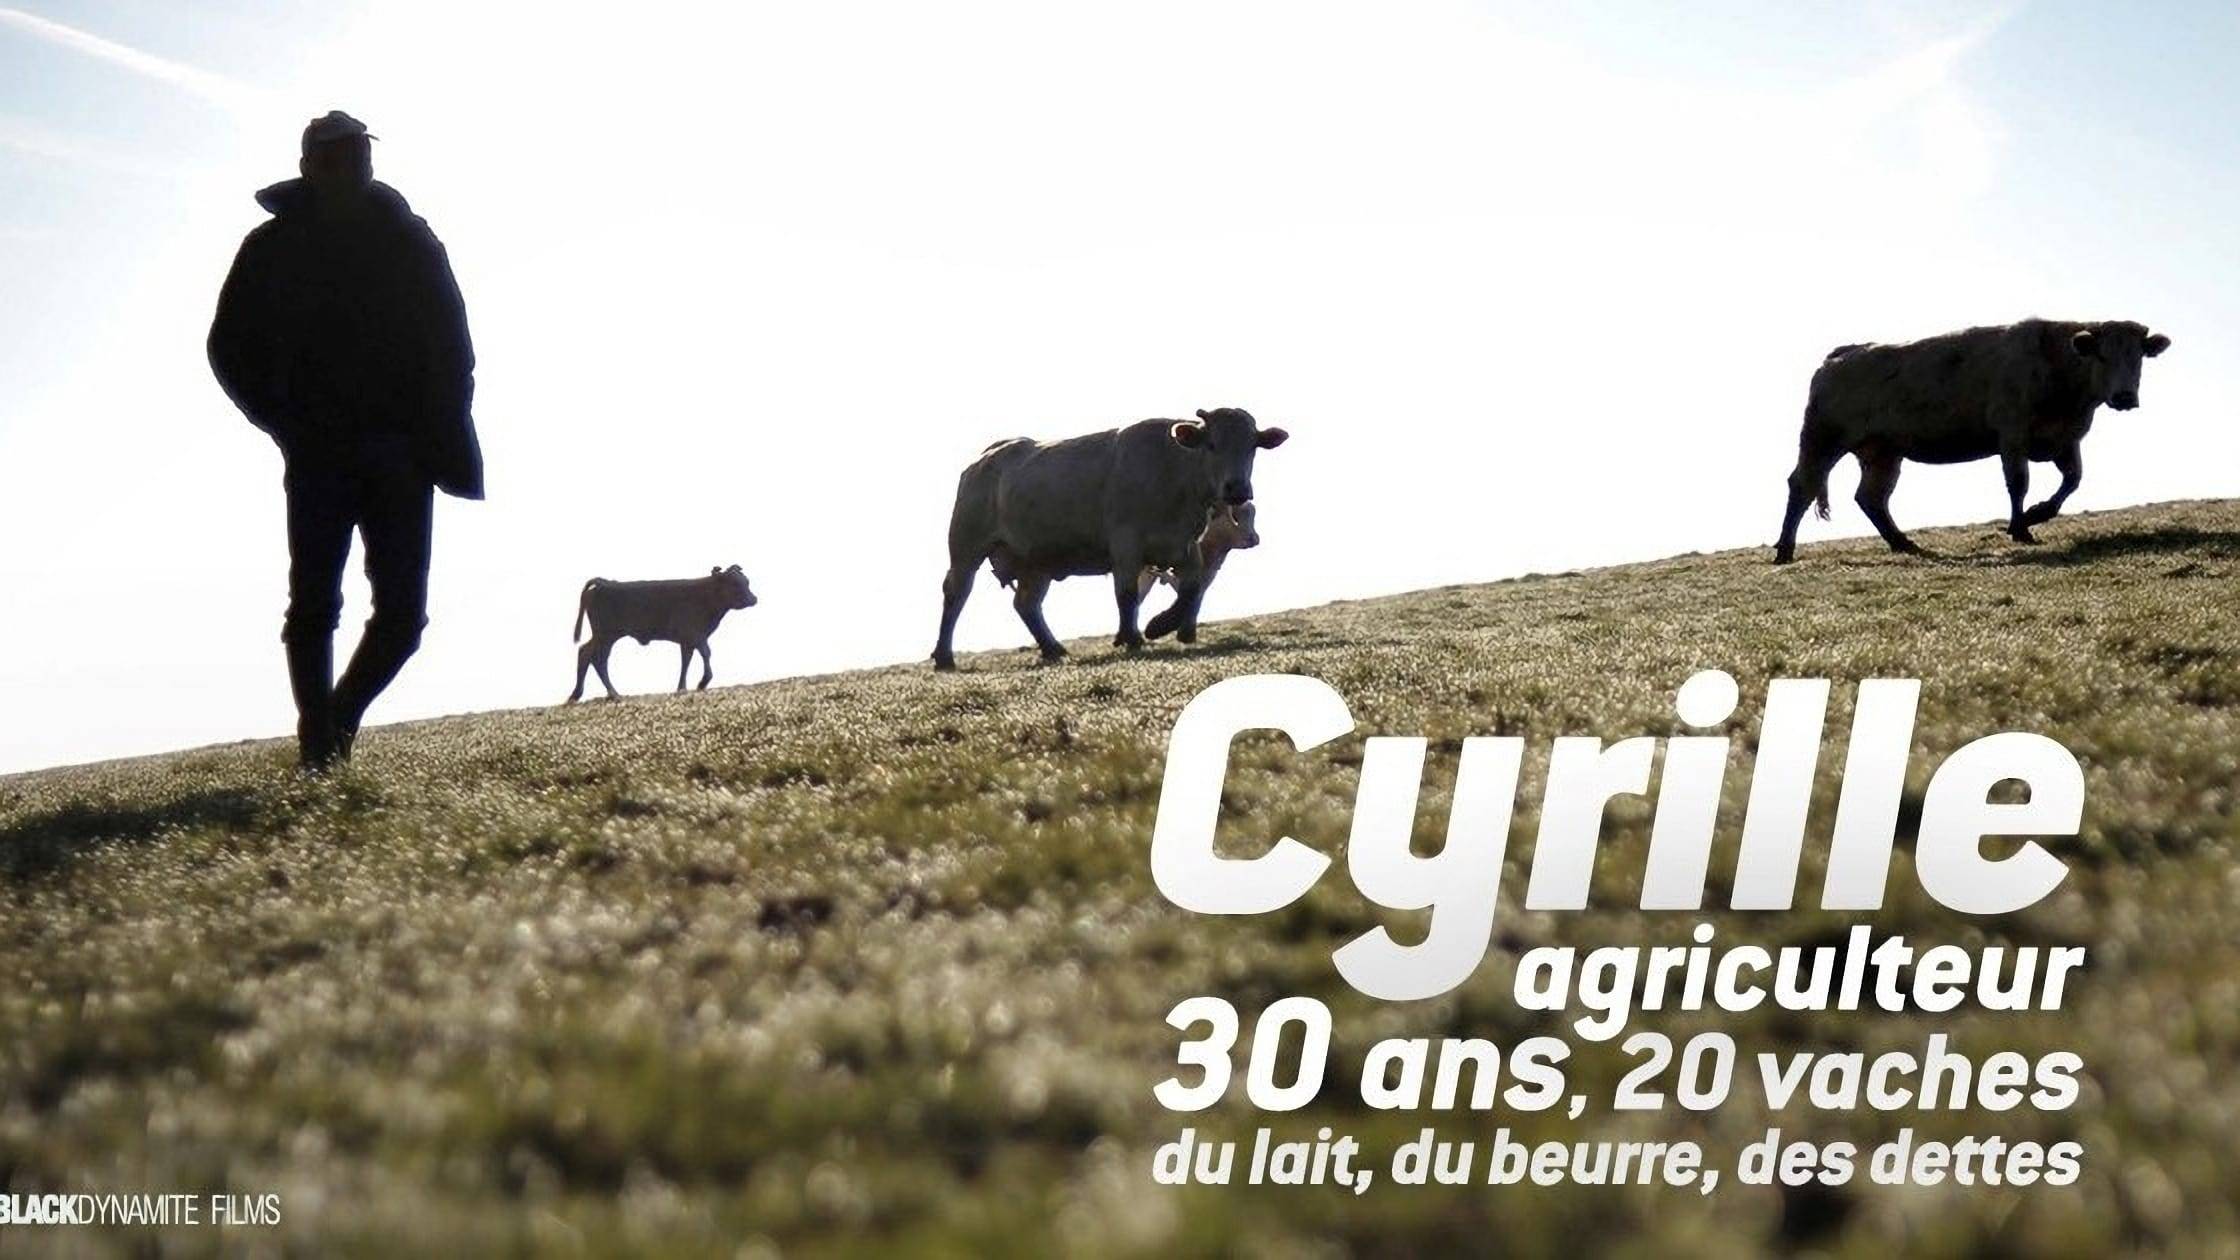 Cubierta de Cyrille, agriculteur, 30 ans, 20 vaches, du lait, du beurre, des dettes